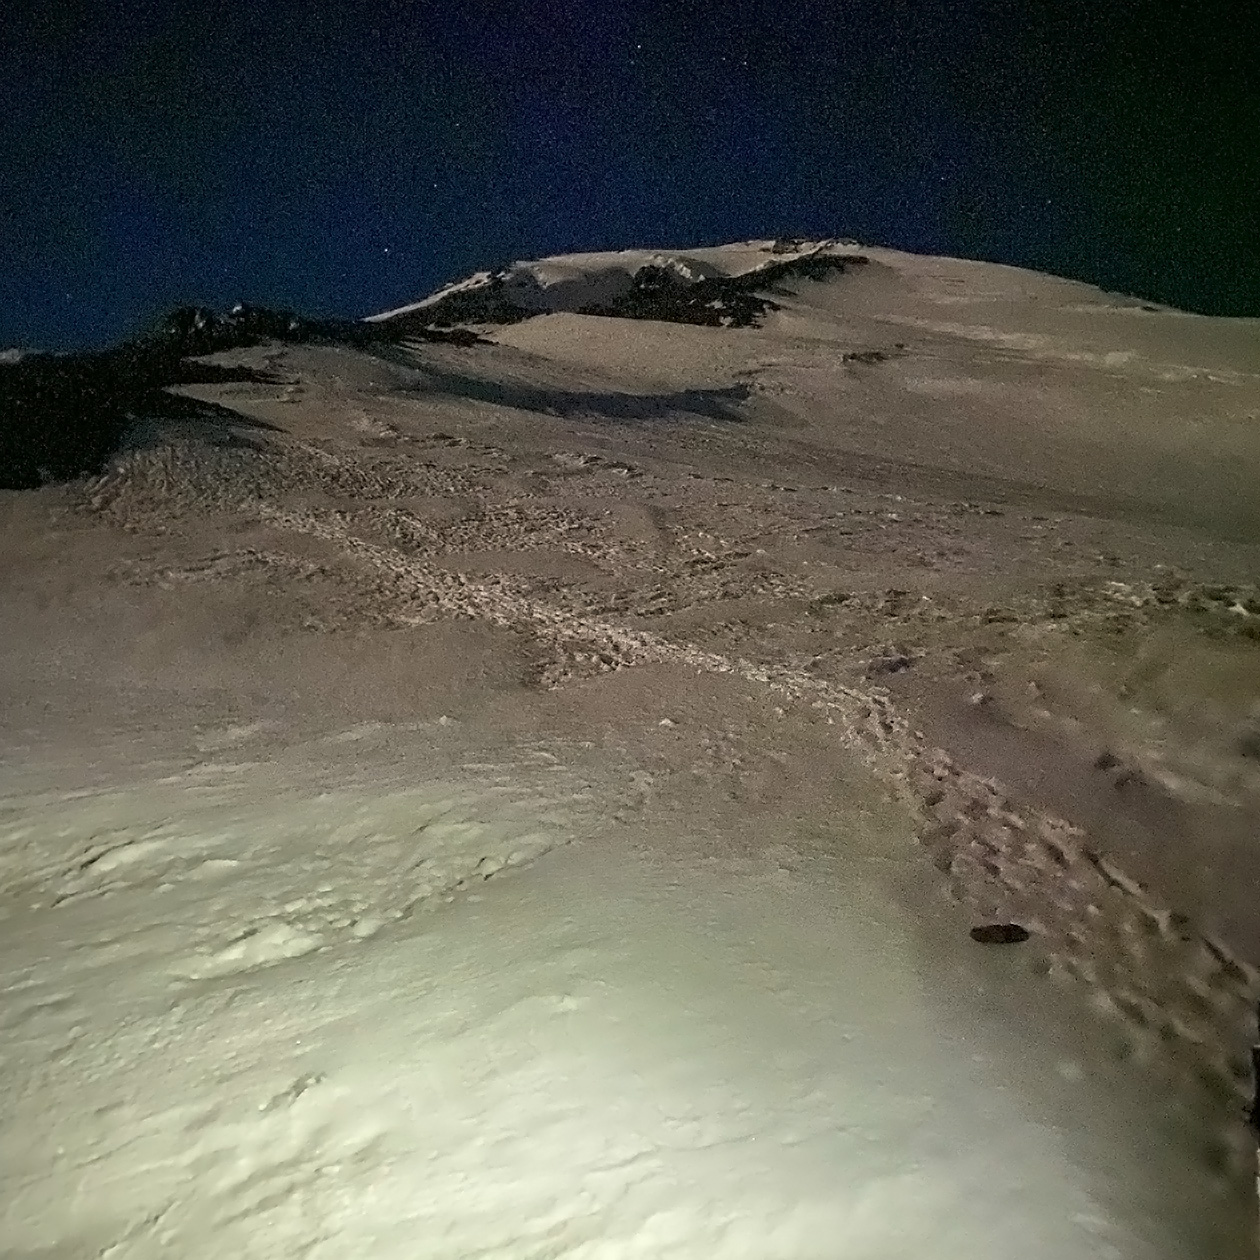 Так выглядела восточная вершина Эльбруса в момент нашего восхождения. Кажется, что путь пологий и нет ничего сложного, но картинка обманчива